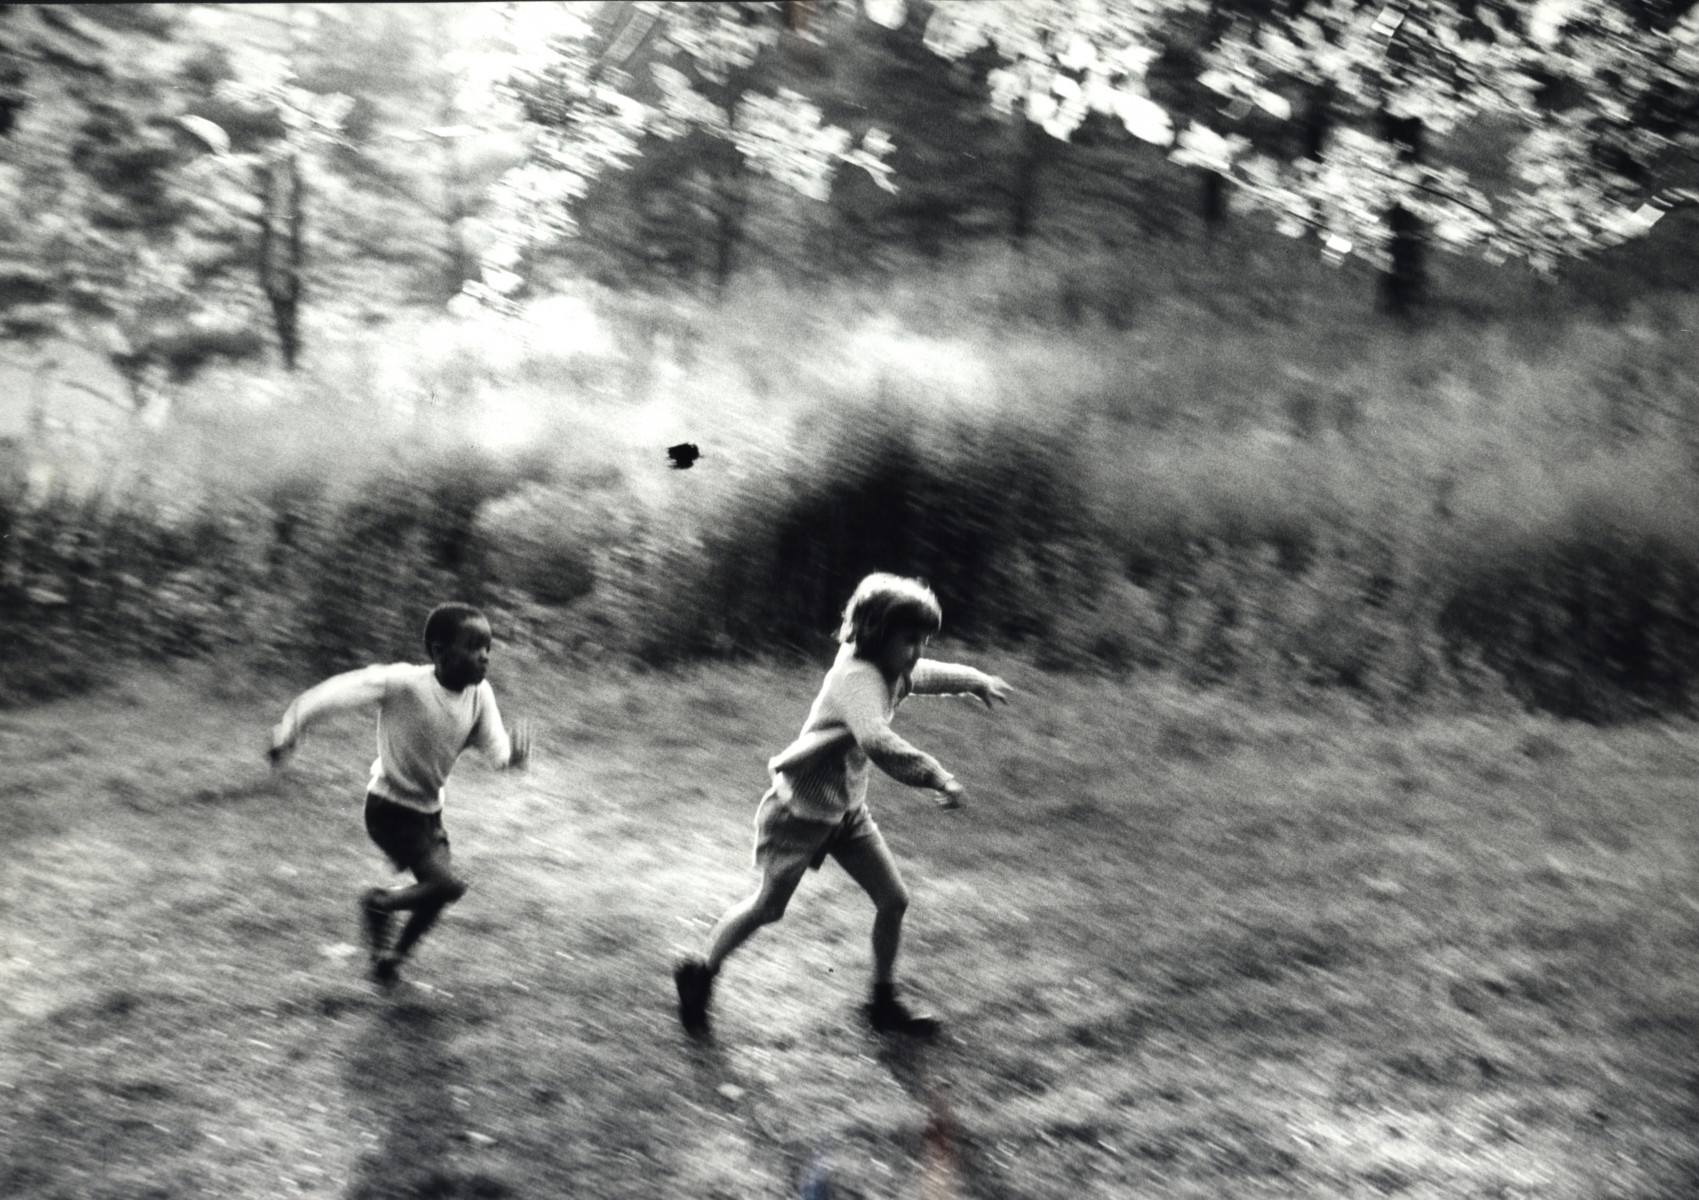 Детский лагерь для детей из бедных семей, Нью-Йорк, 1963. Фотограф Леонард Фрид